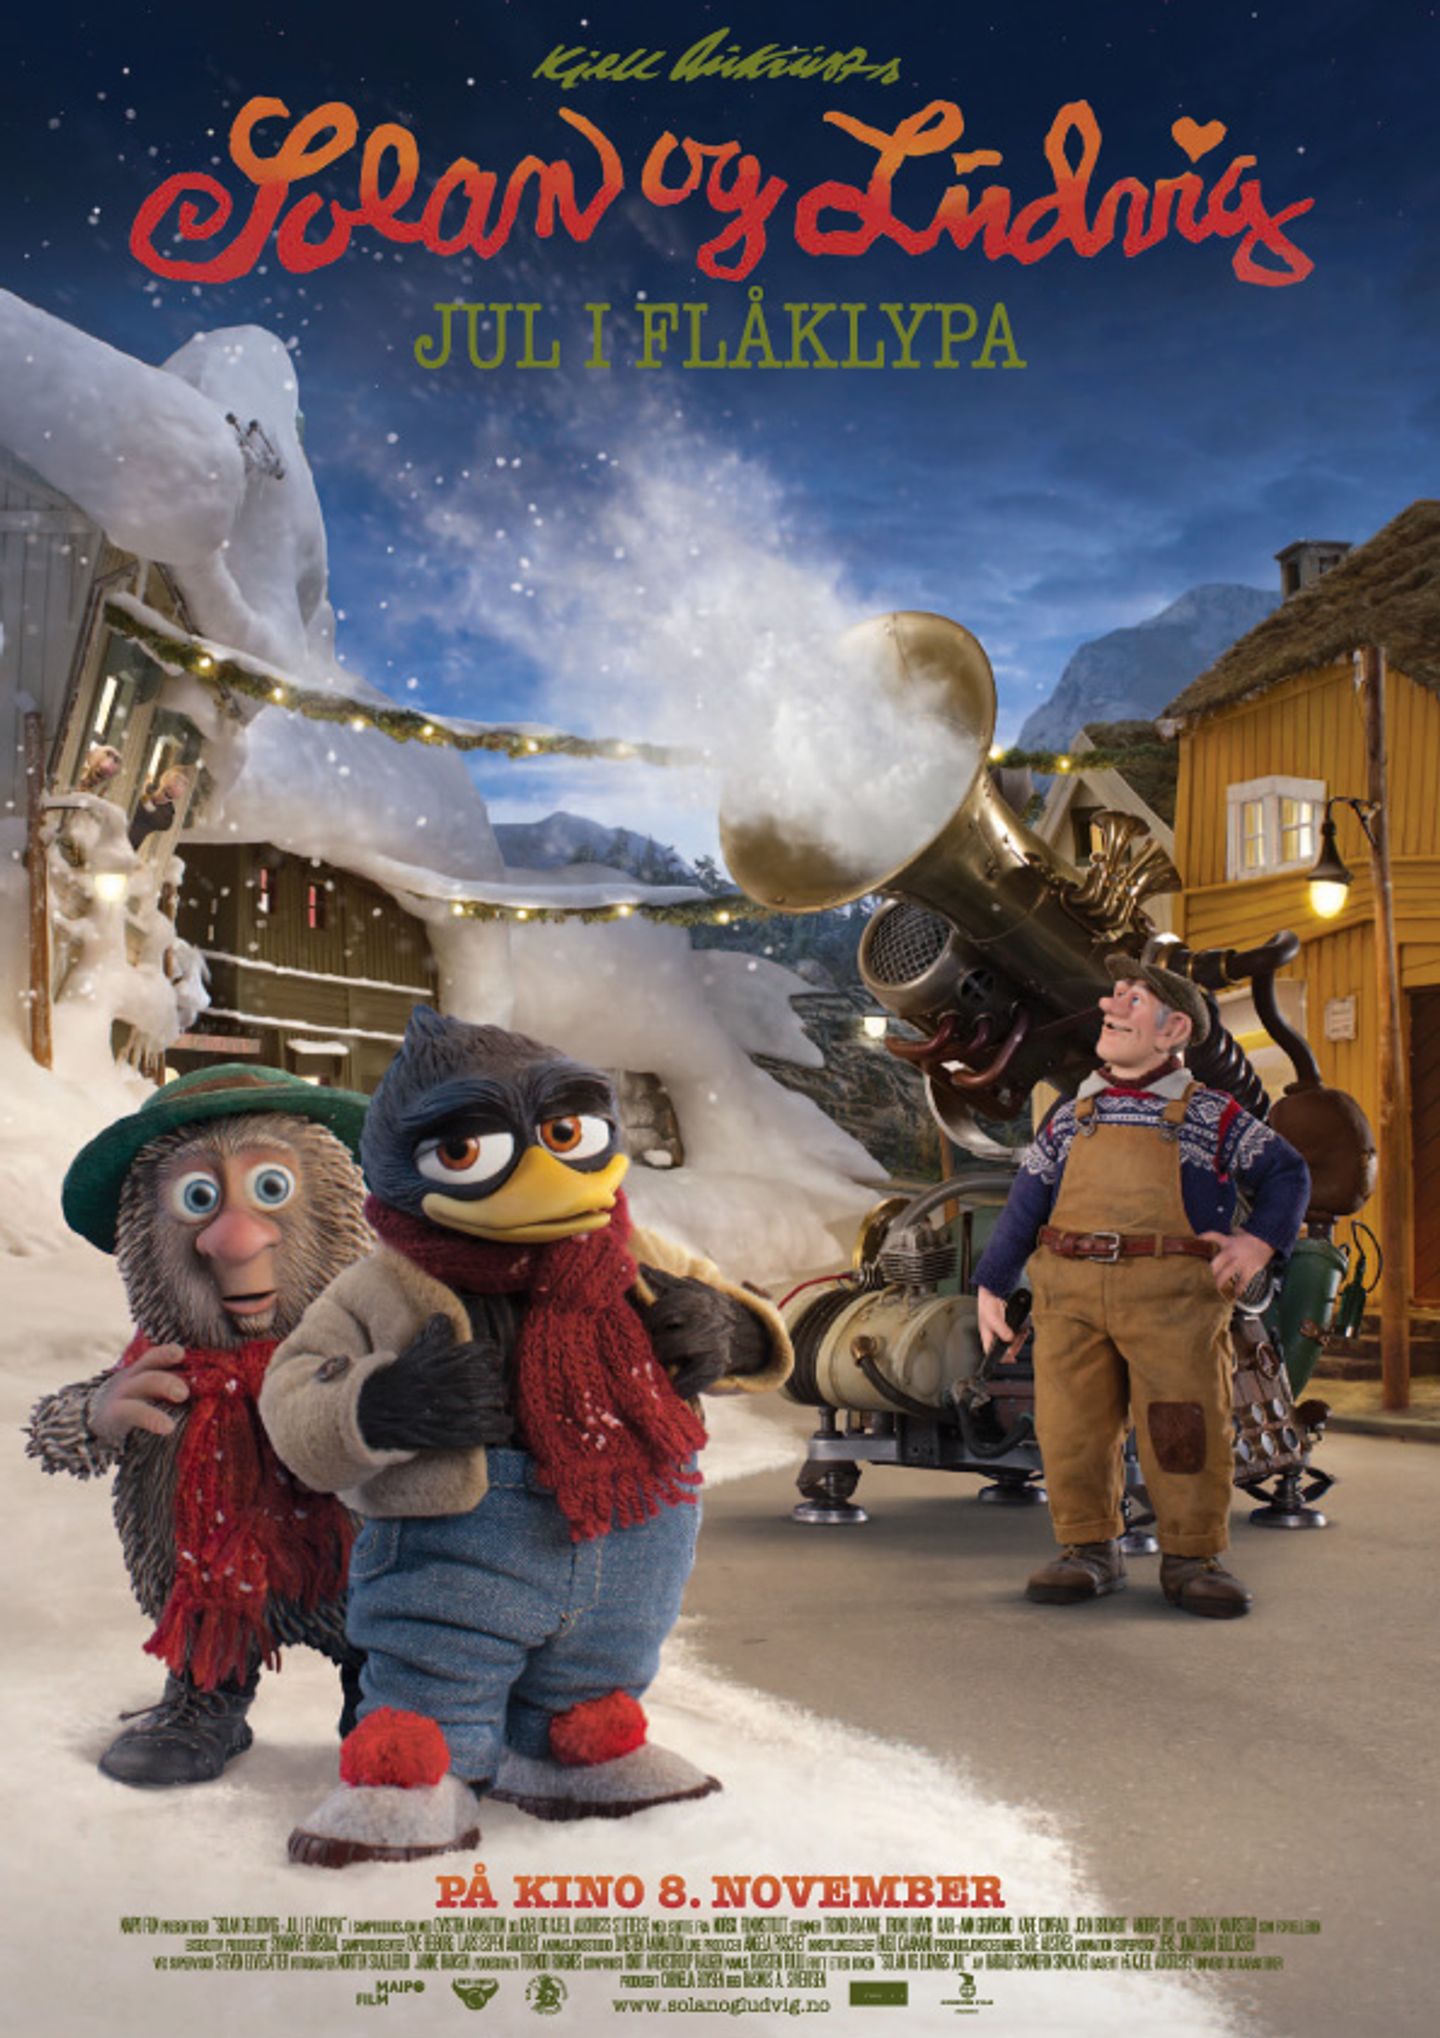 Plakat for 'Solan og Ludvig - Jul i Flåklypa'